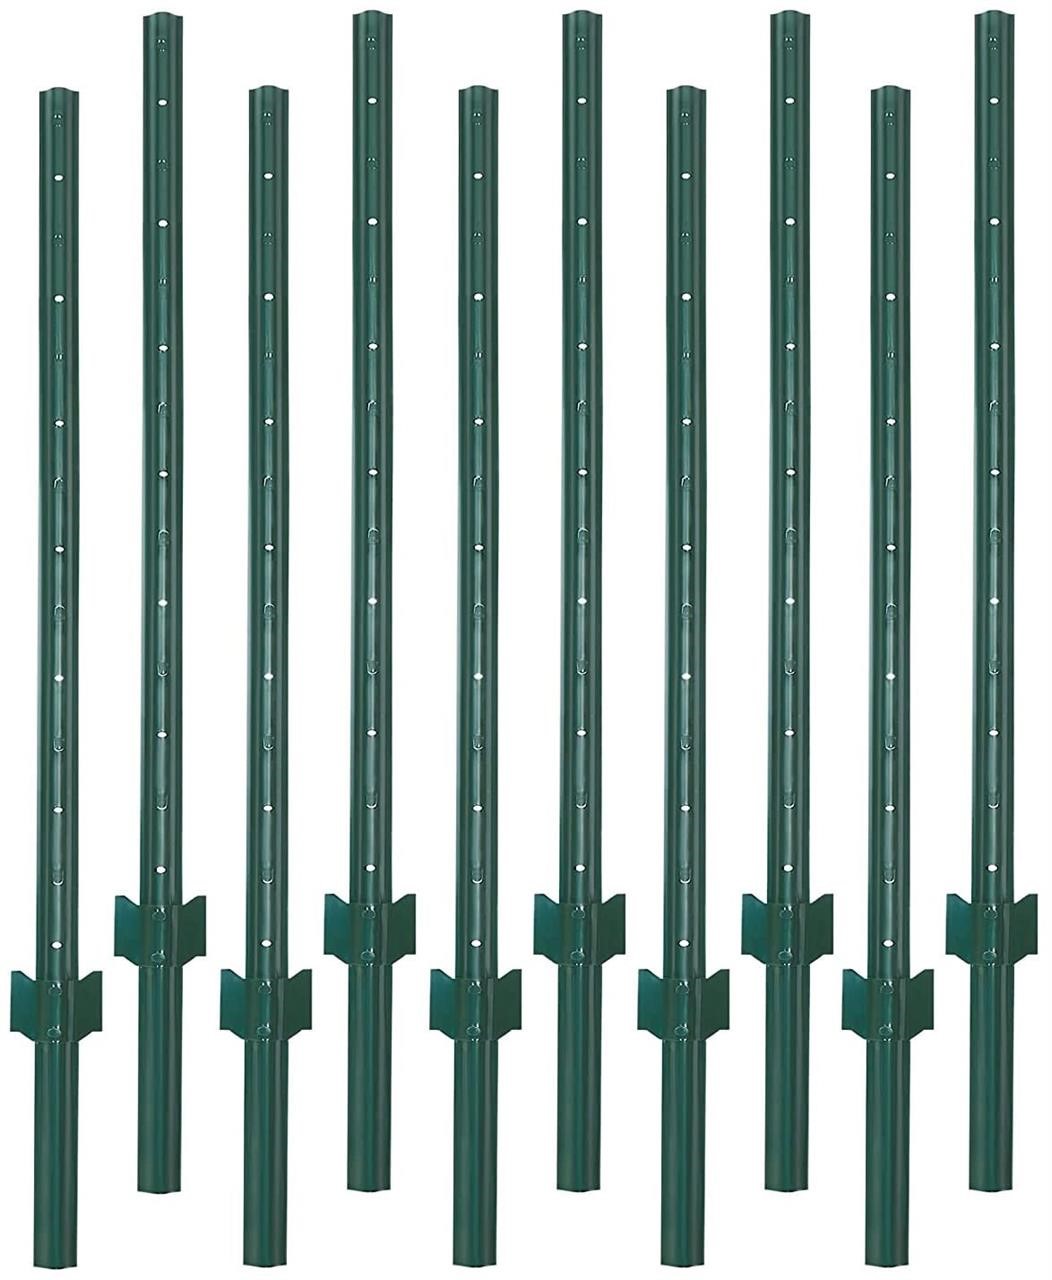 VASGOR 5 Feet Sturdy Duty Metal Fence Post – Gard